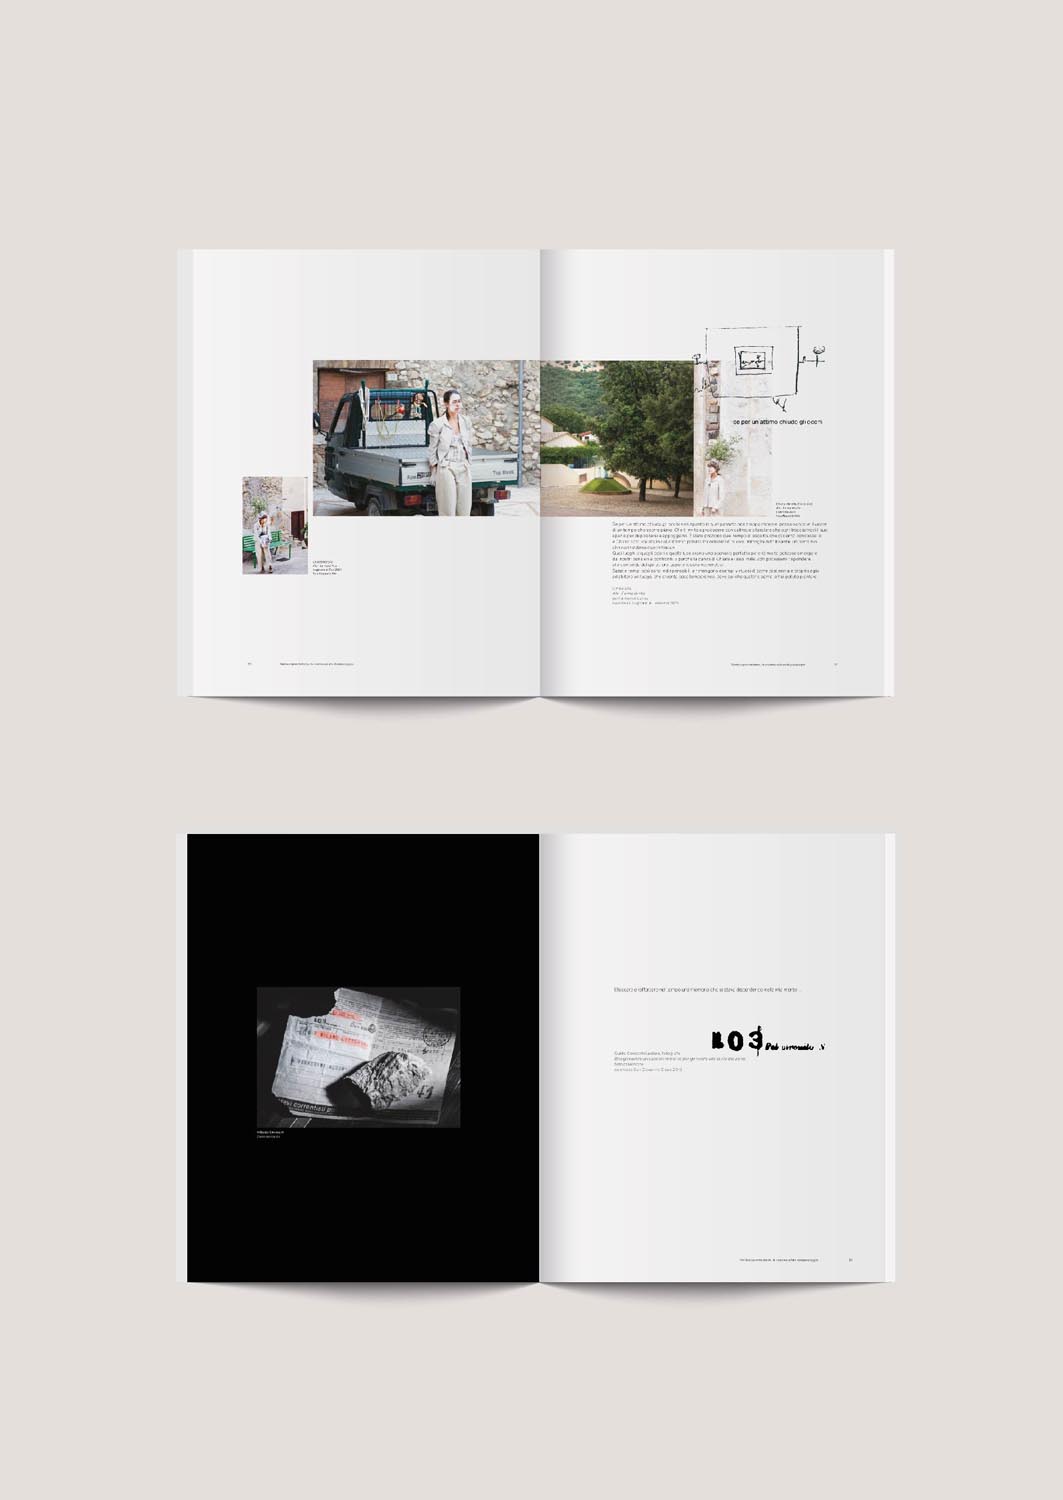 Progetto grafico editoriale - Verdecoprente book - La scena svelata del paesaggio